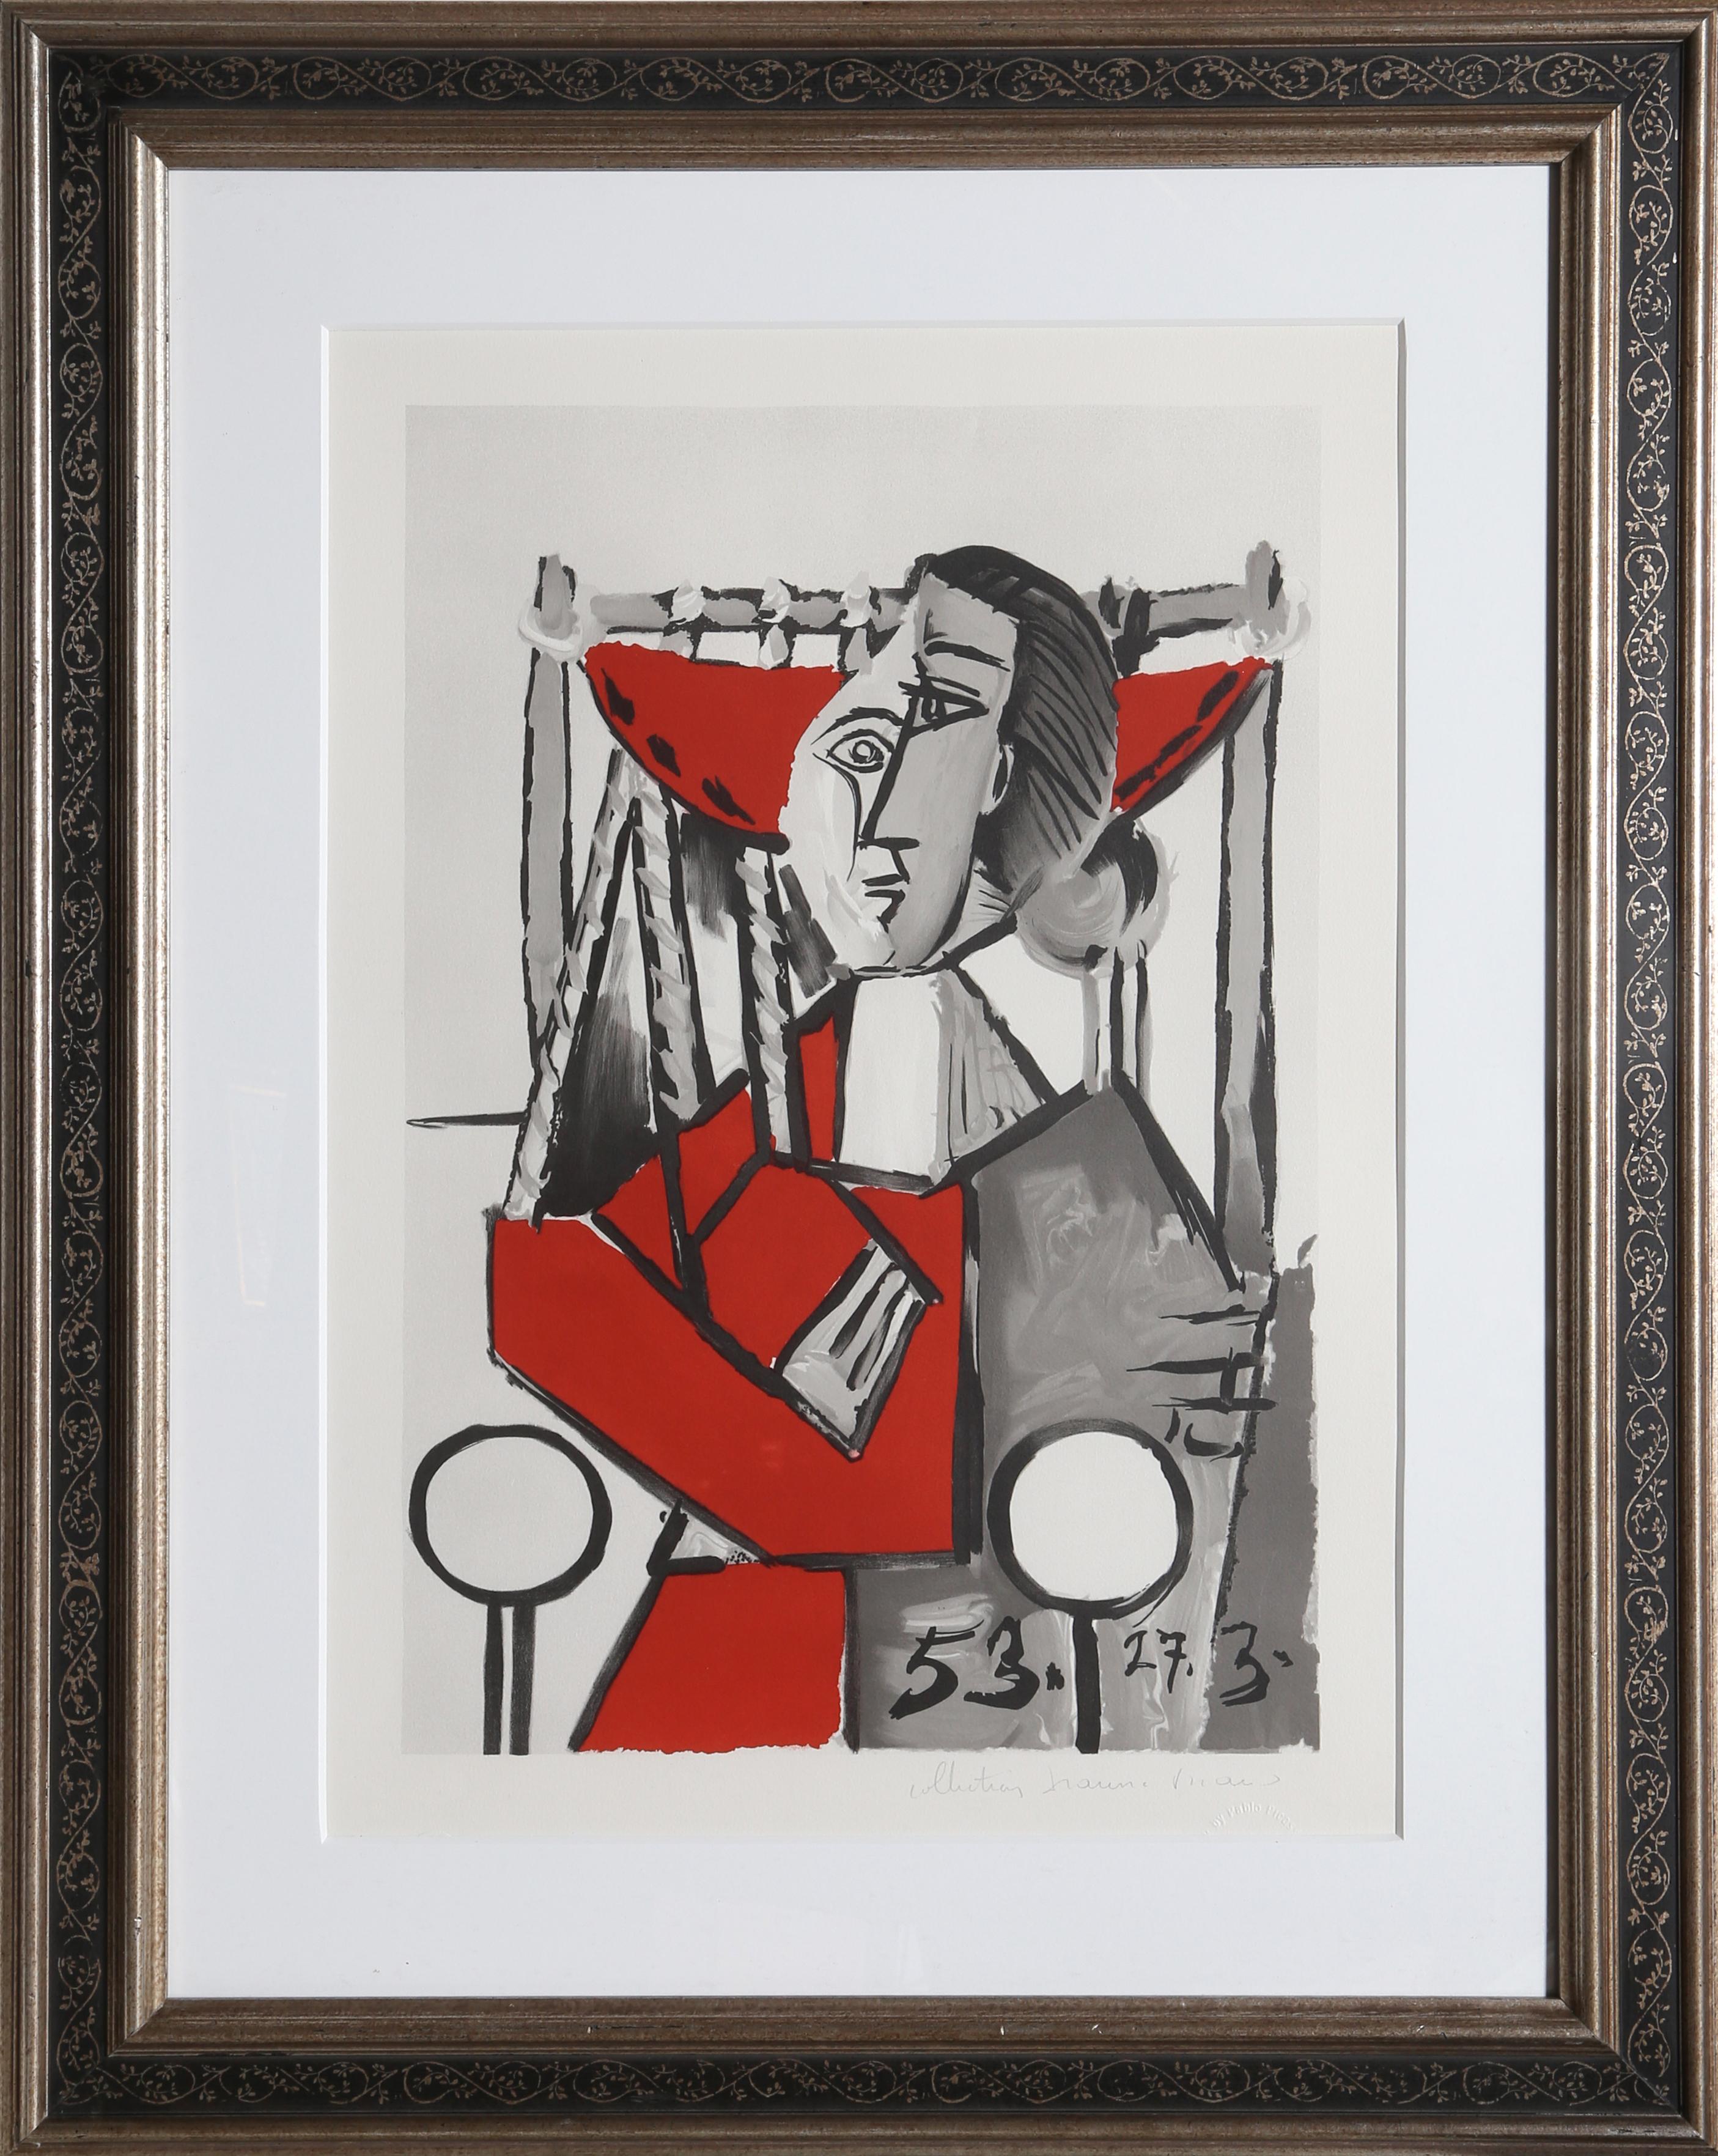 La représentation par Pablo Picasso d'une femme dans un fauteuil est un exemple classique de son style cubiste avant-gardiste. Rendue sous la forme d'une série de formes angulaires et de lignes épaisses, la figure de la femme apparaît fragmentée et